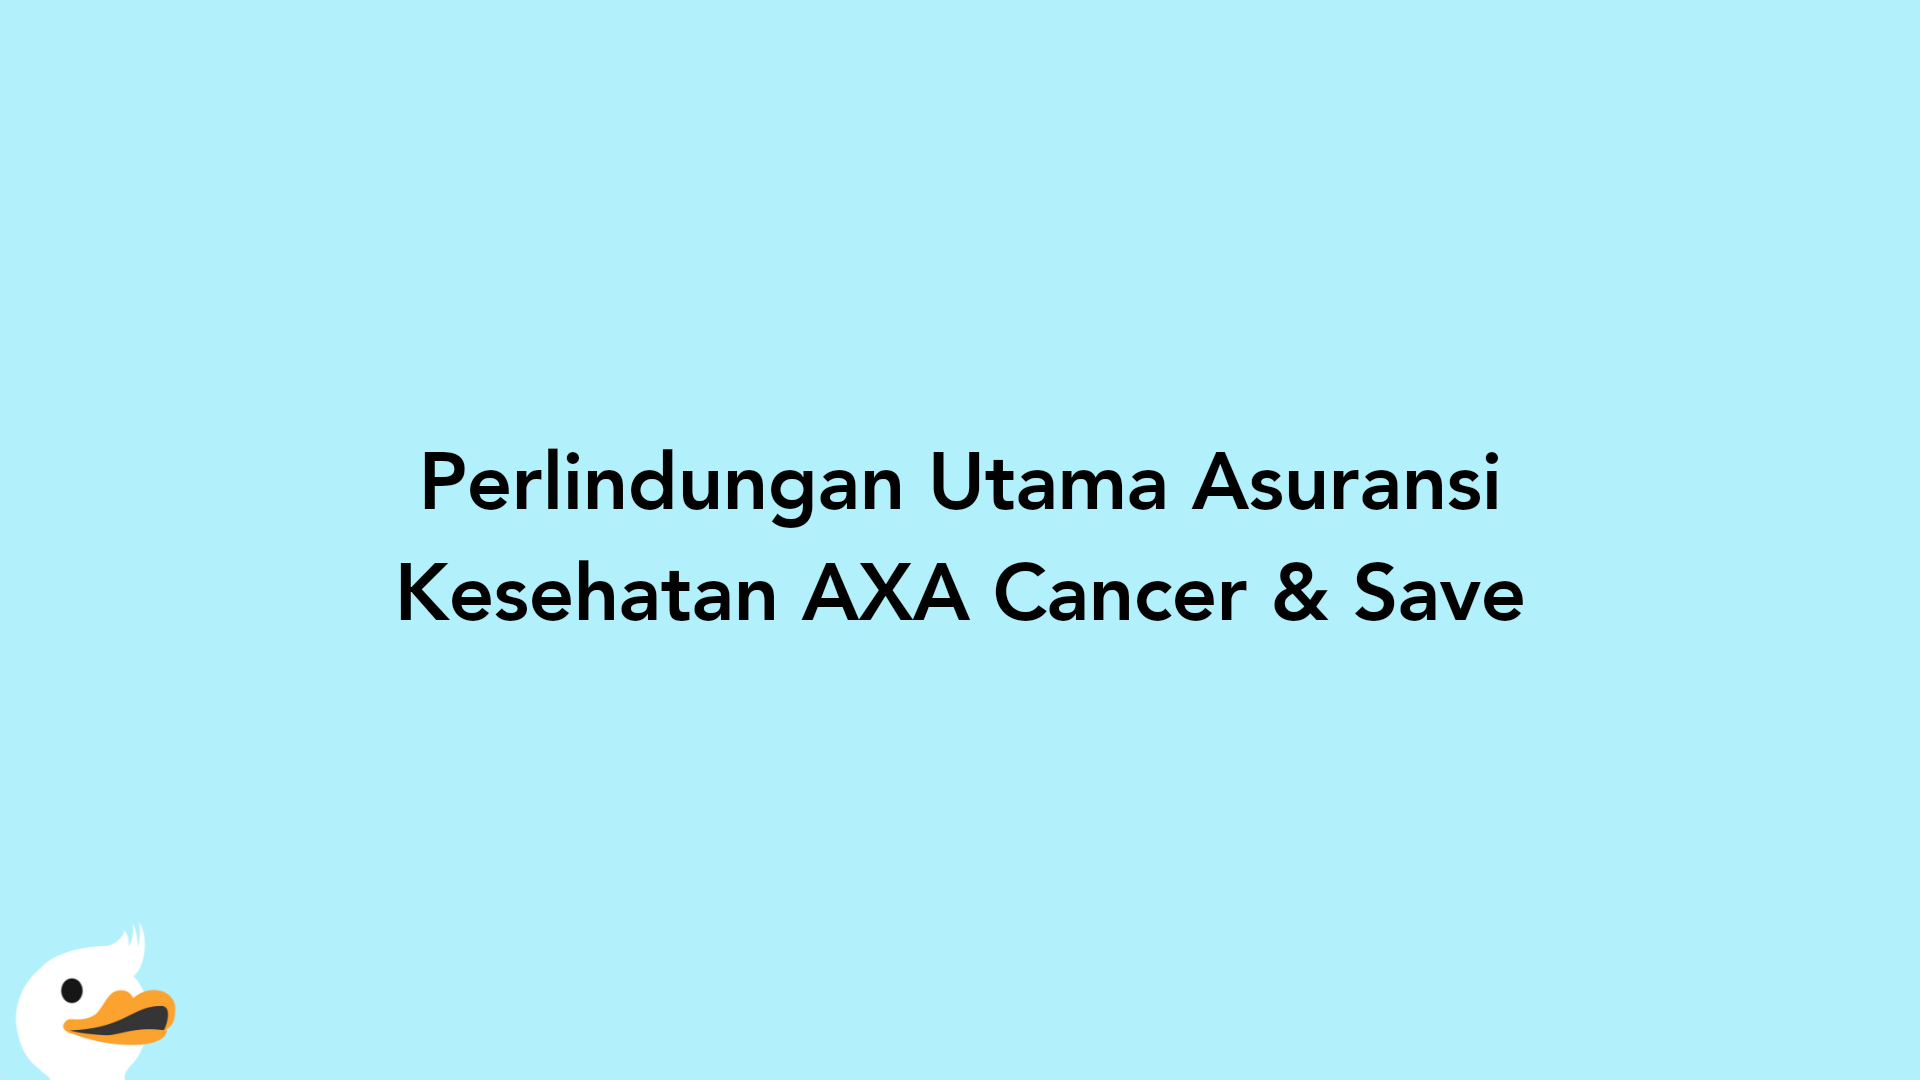 Perlindungan Utama Asuransi Kesehatan AXA Cancer & Save